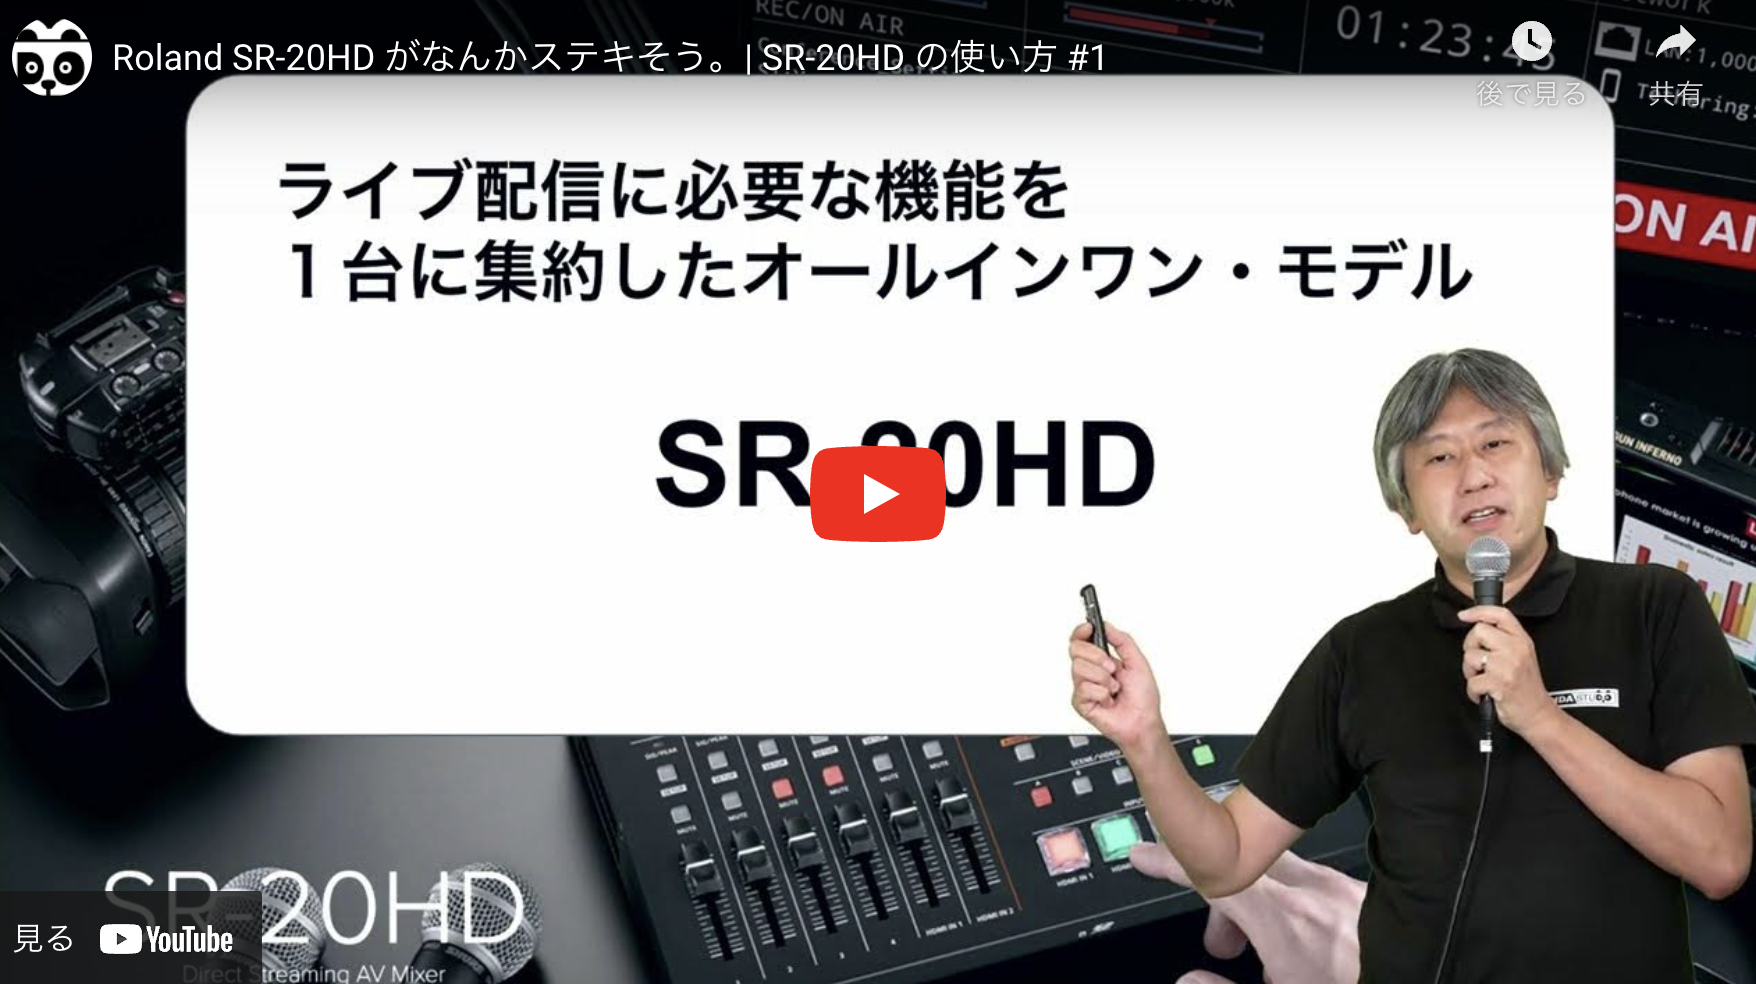 Roland SR-20HD 役立つ動画集